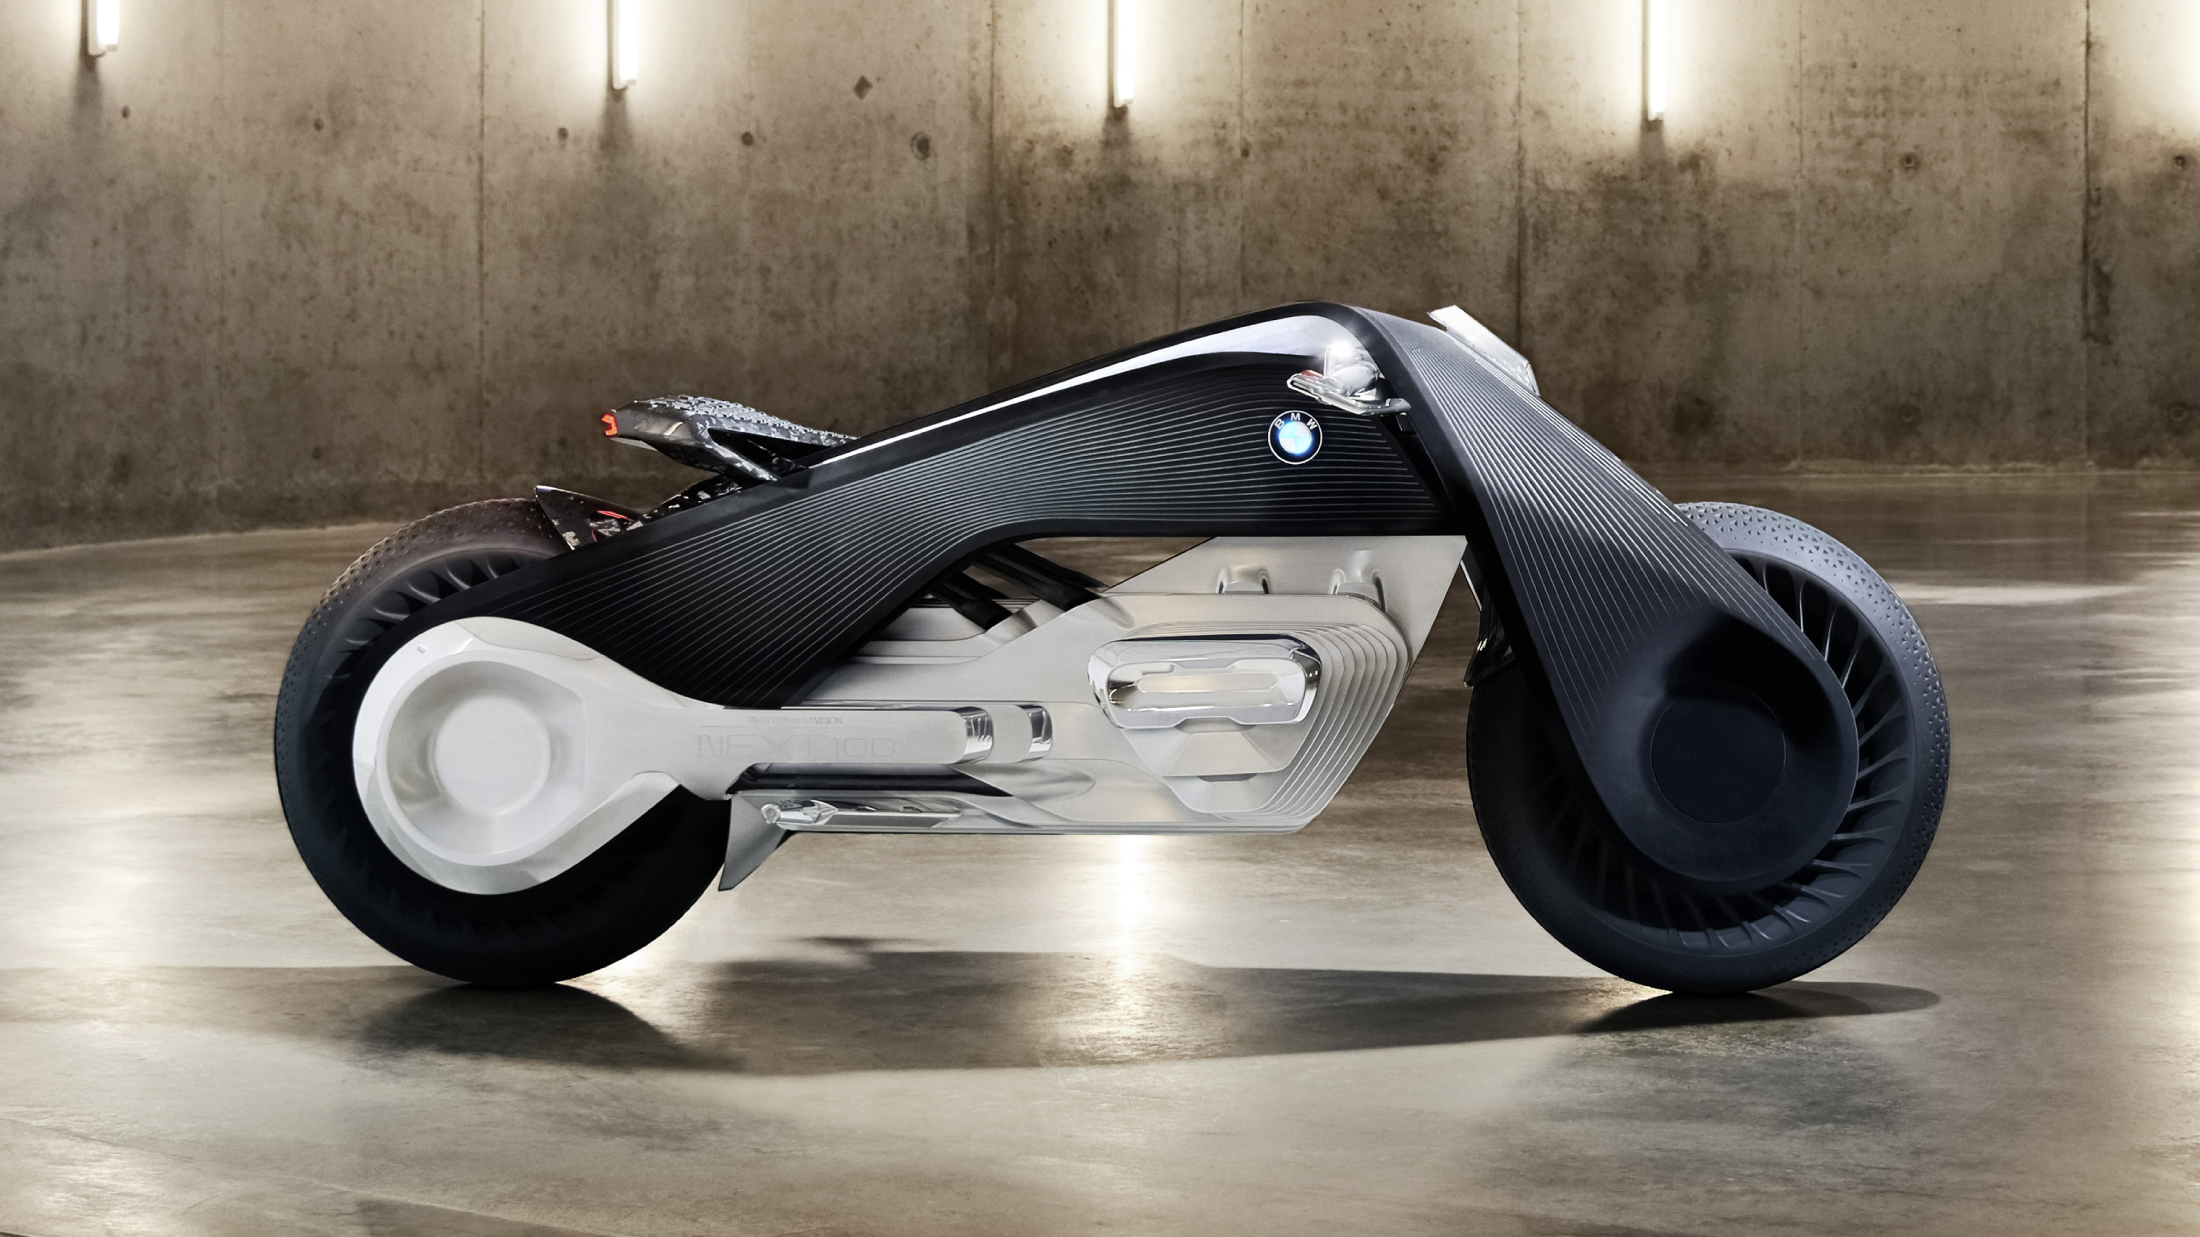 Tampilan samping dari sepeda self-balancing dari BMW